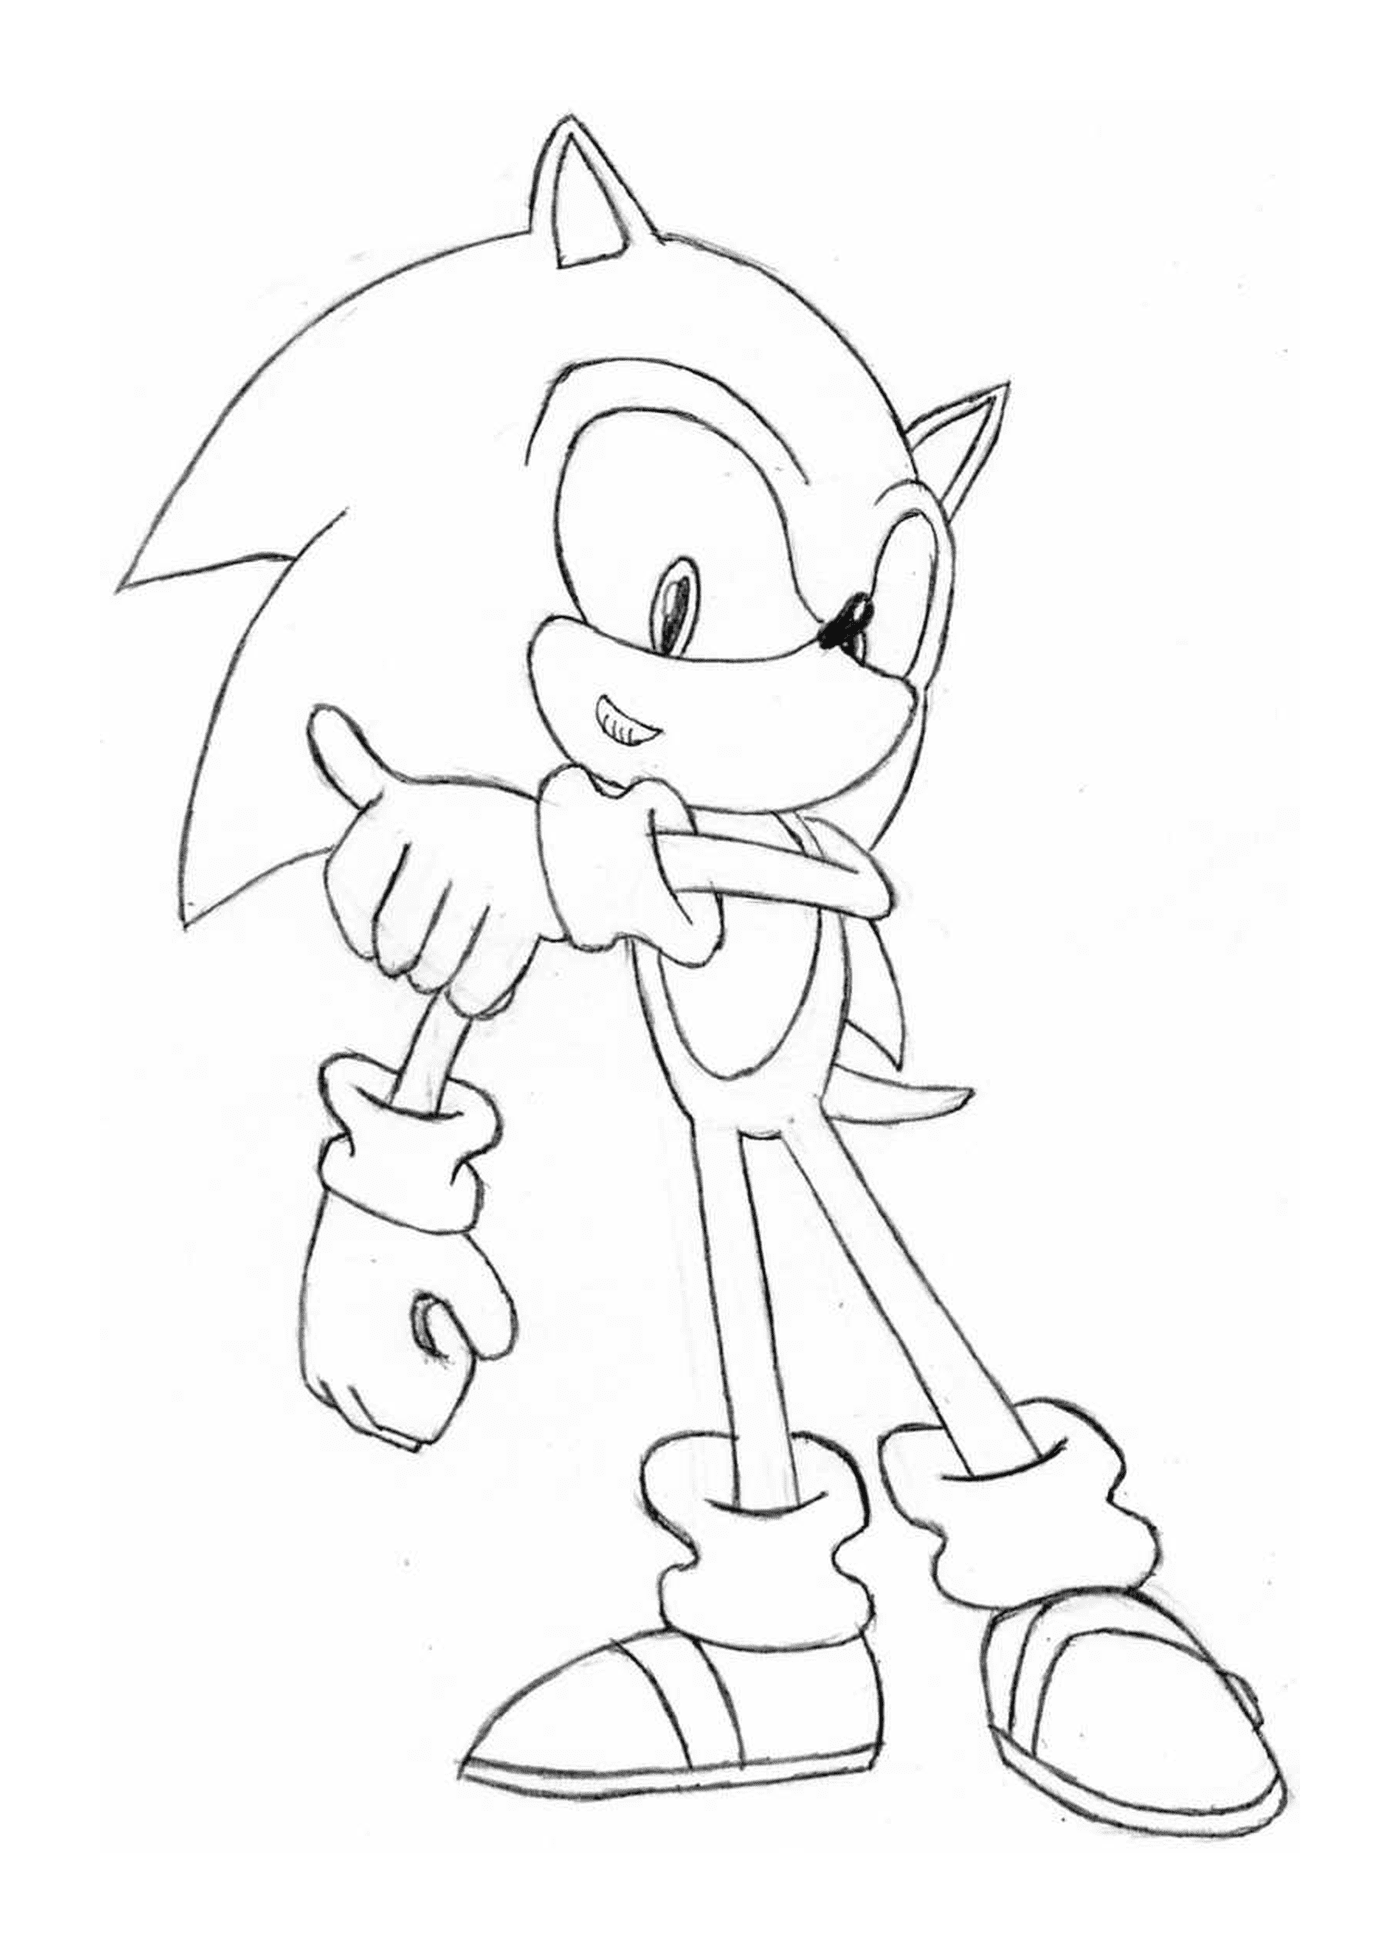  Super energético Sonic 